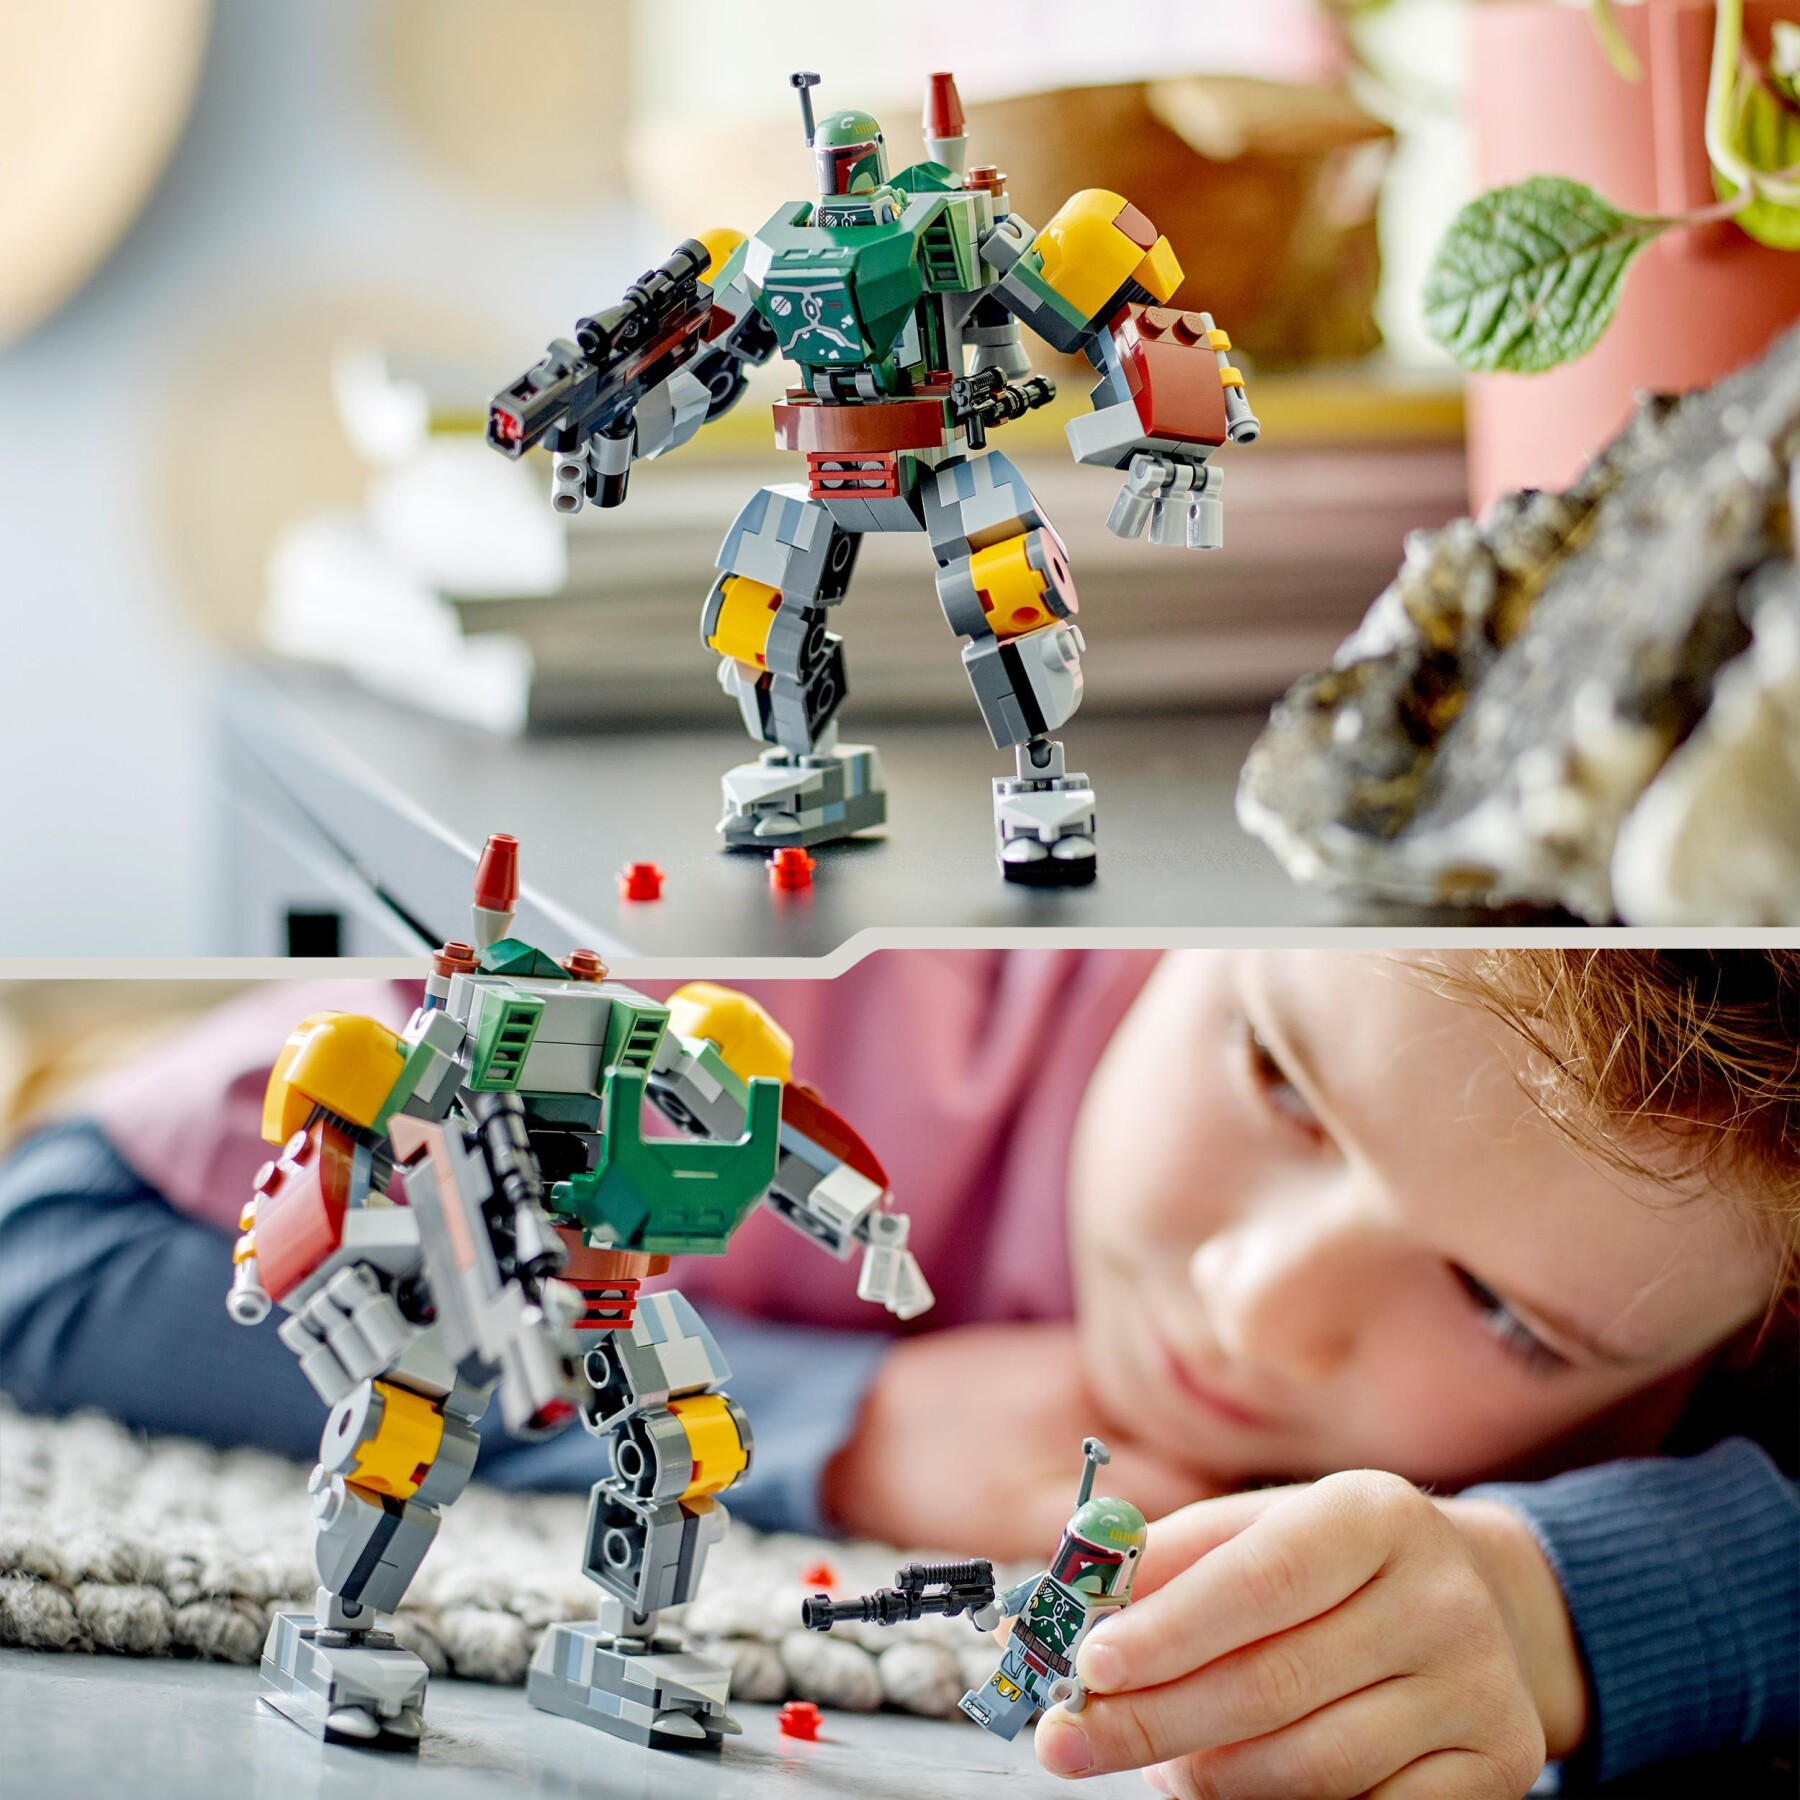 Lego star wars 75369 mech di boba fett, set action figure con blaster e jetpack, giochi da collezione per bambini 6+ anni - LEGO STAR WARS, Star Wars